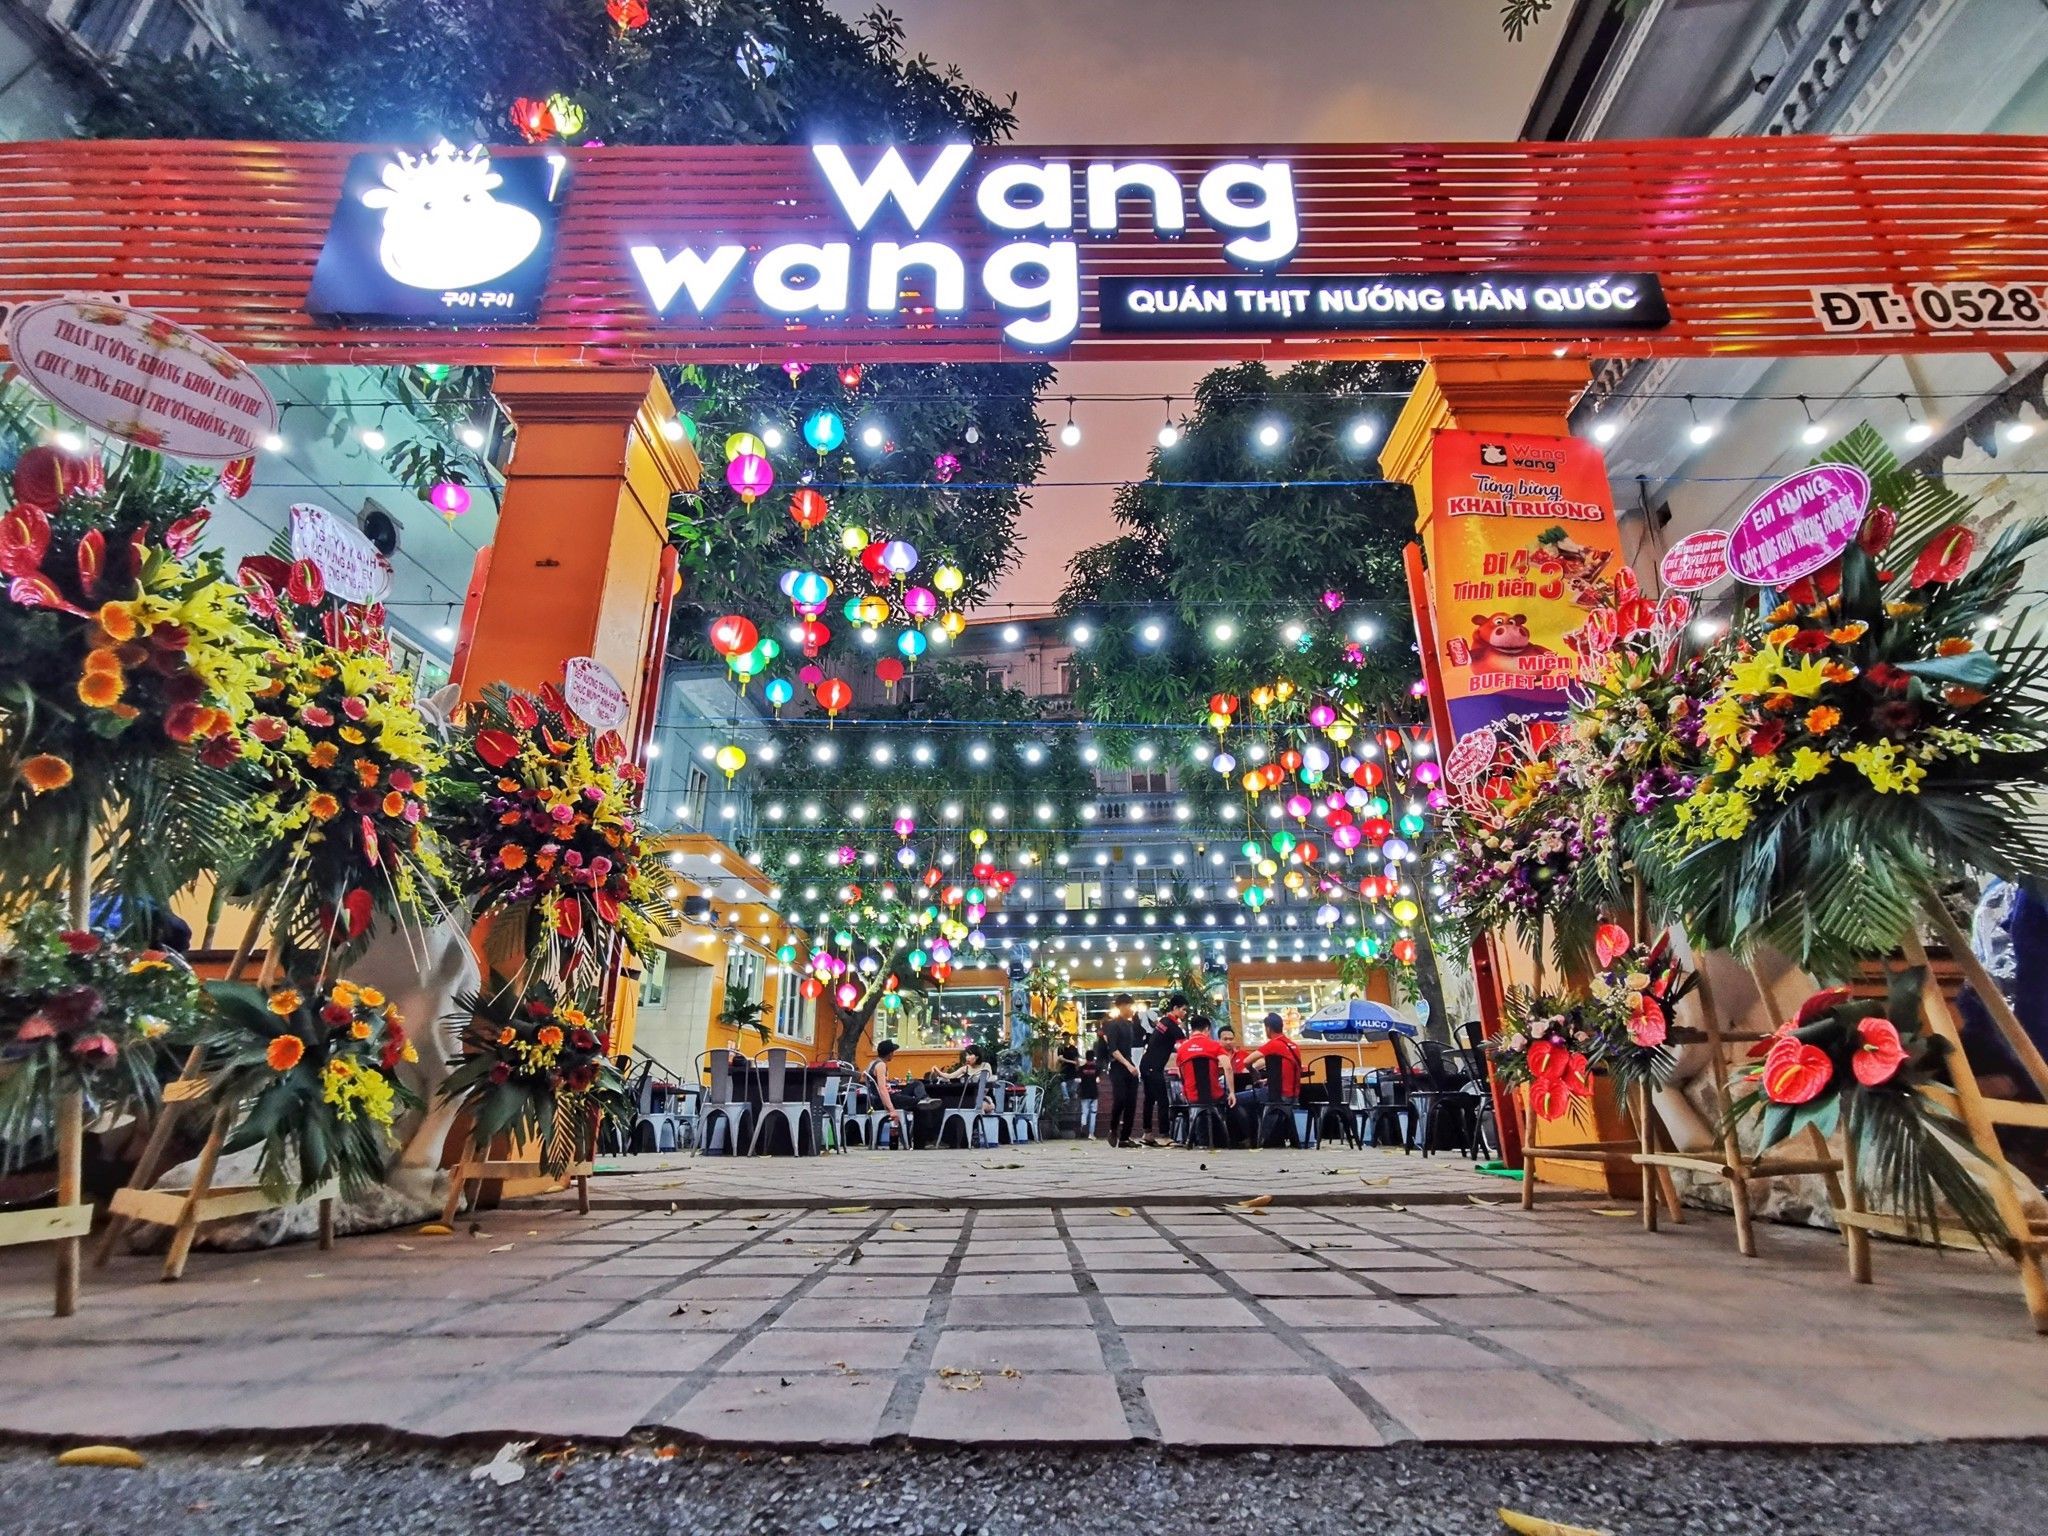 Lẩu Nướng Wang Wang - Hồ Văn Quán